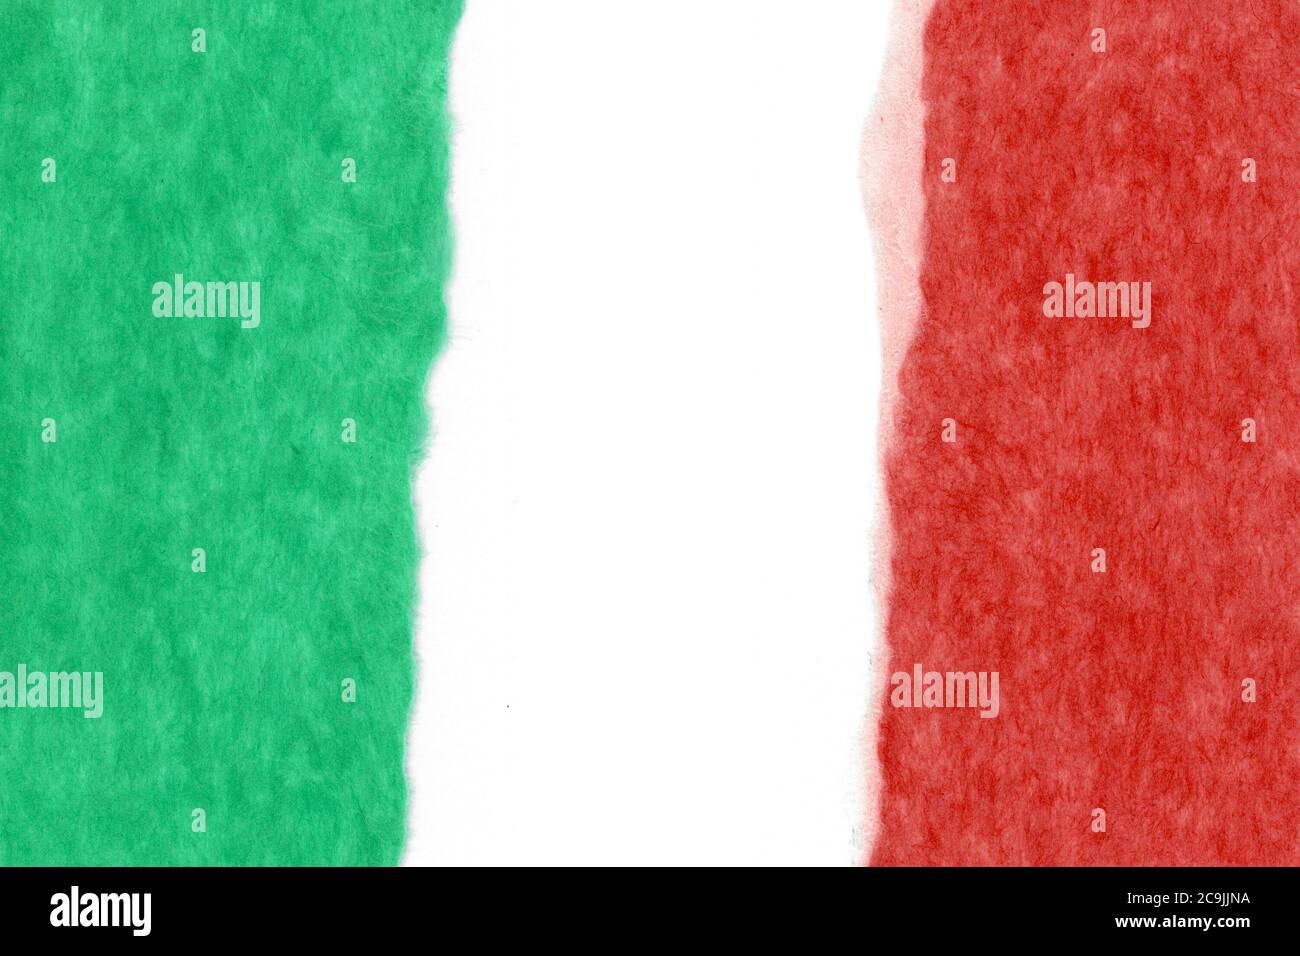 Le drapeau national italien de l'Italie, l'Europe Banque D'Images